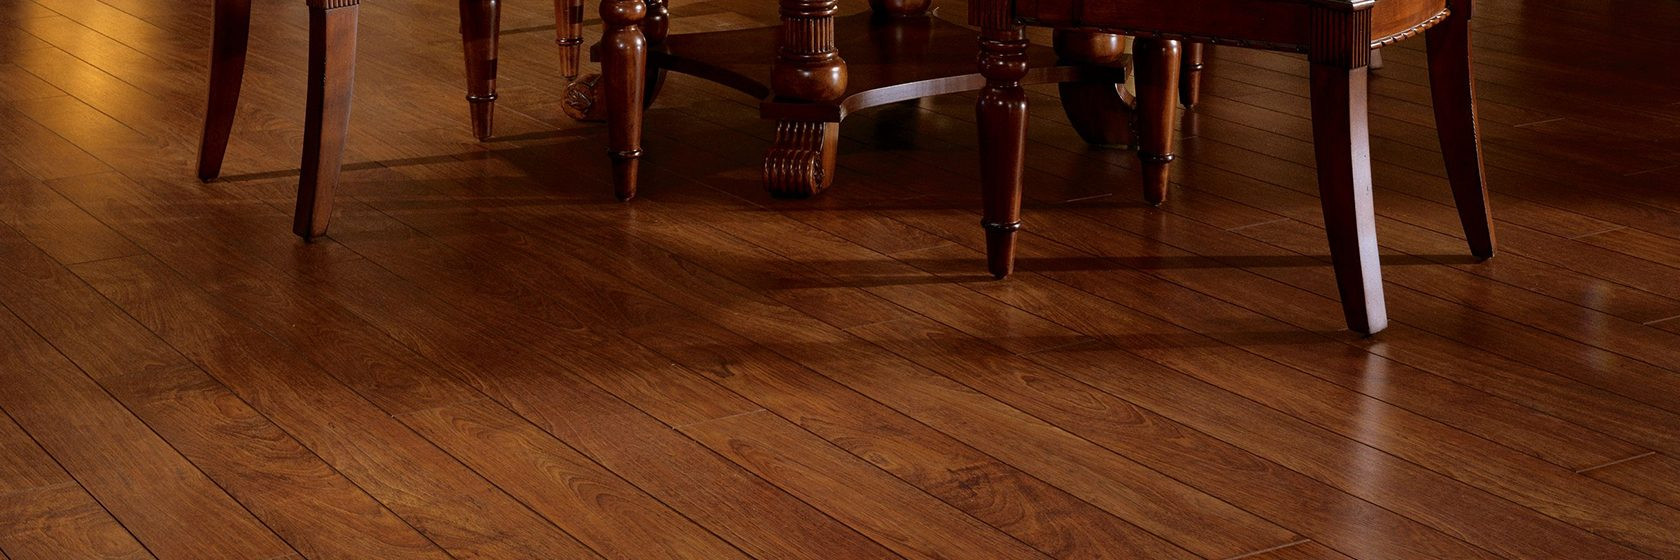 11 Fabulous Bruce Hardwood and Laminate Floor Cleaner Reviews 2024 free download bruce hardwood and laminate floor cleaner reviews of laminate exotic olive ash l8708 for hero l 1680 560